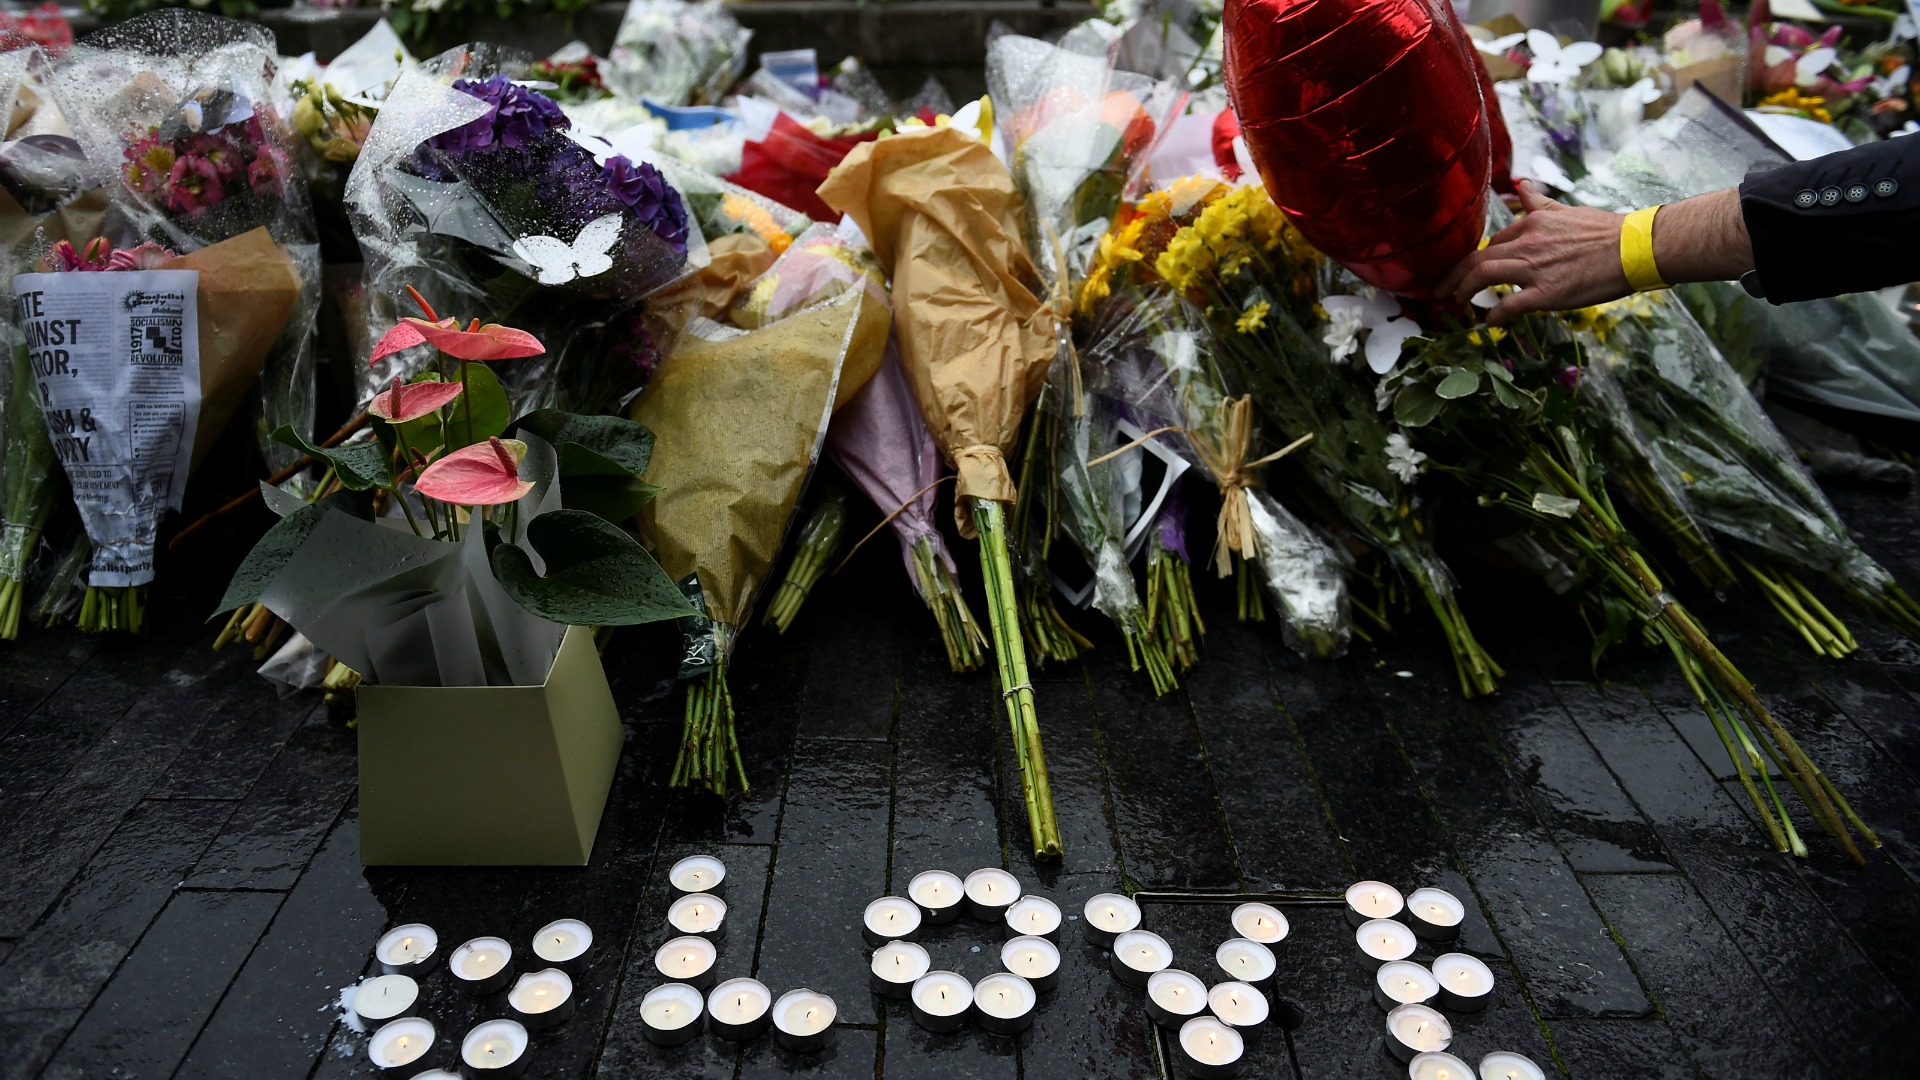 Familiares del español desaparecido en el ataque de Londres viajan al Reino Unido